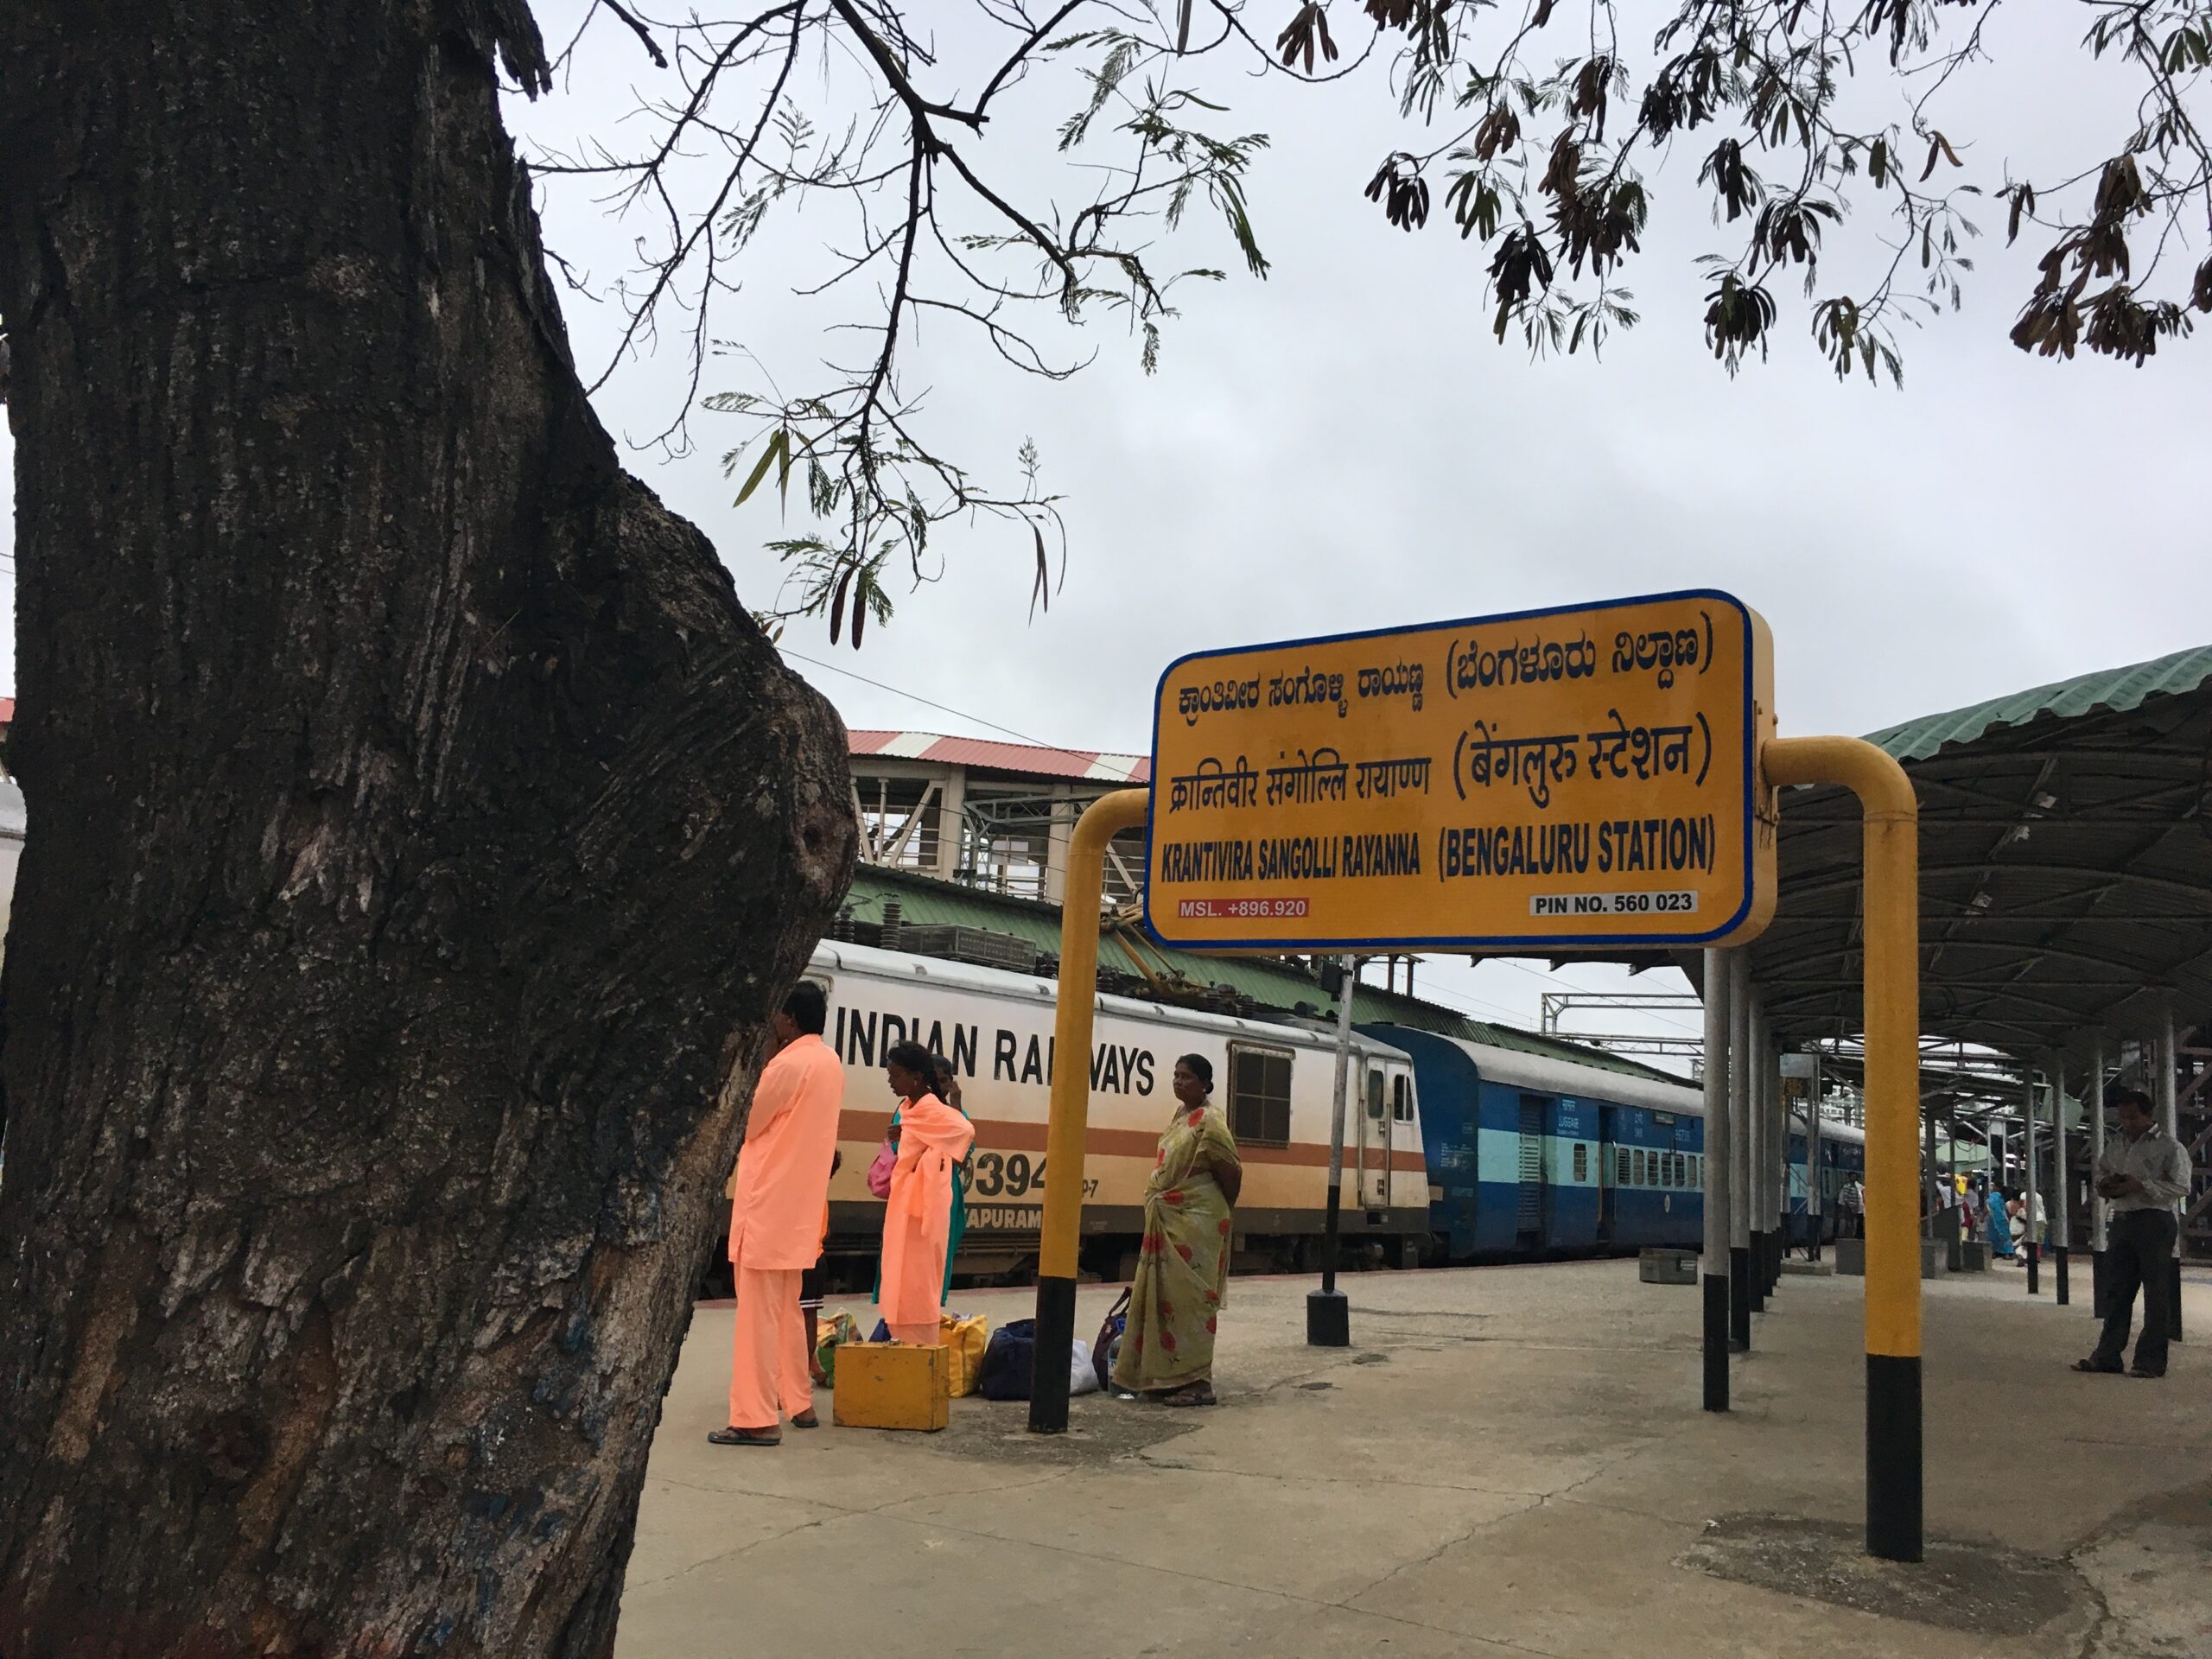 Bangalore City Railway Station (SBC), officially called Krantivira Sangolli Rayanna (Bengaluru Station)